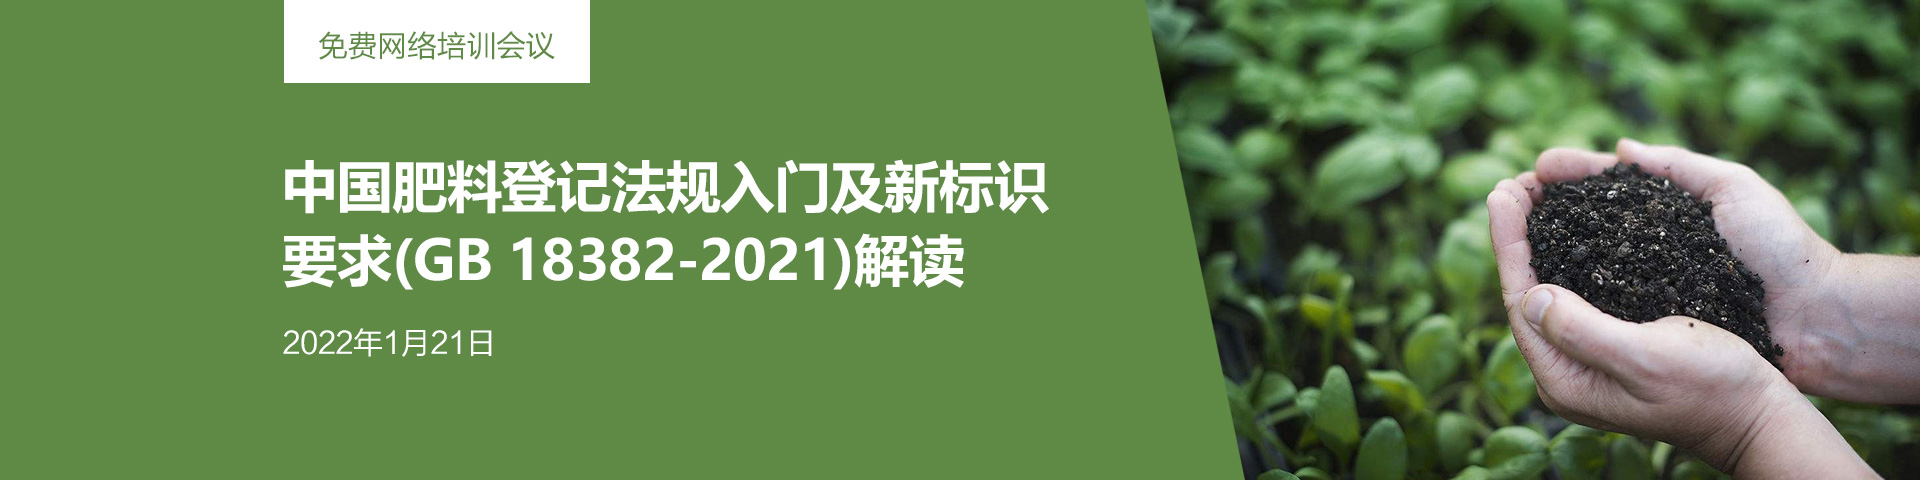 免费网络培训会议：中国肥料登记法规入门及新标识要求(GB 18382-2021)解读 (2022年1月21日)